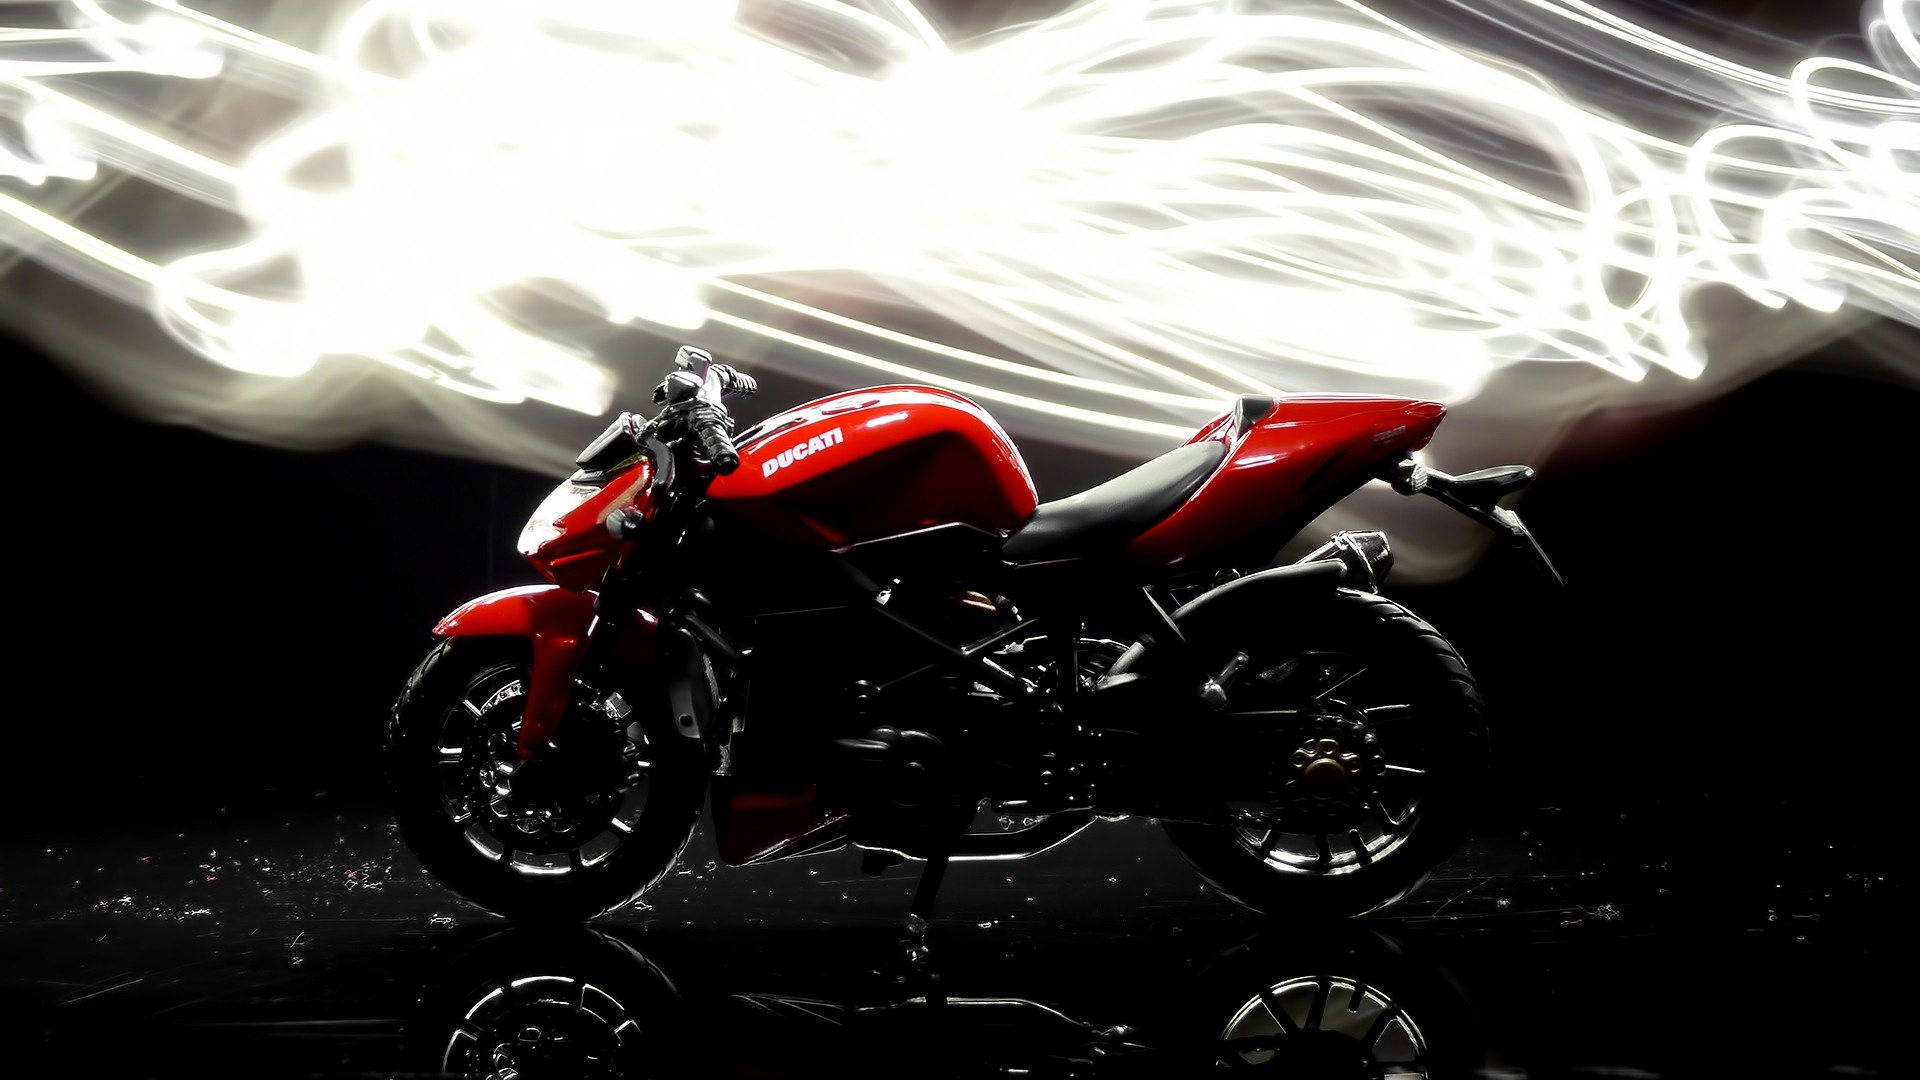 1920x1080 Hd Bikes Red Ducati 1199